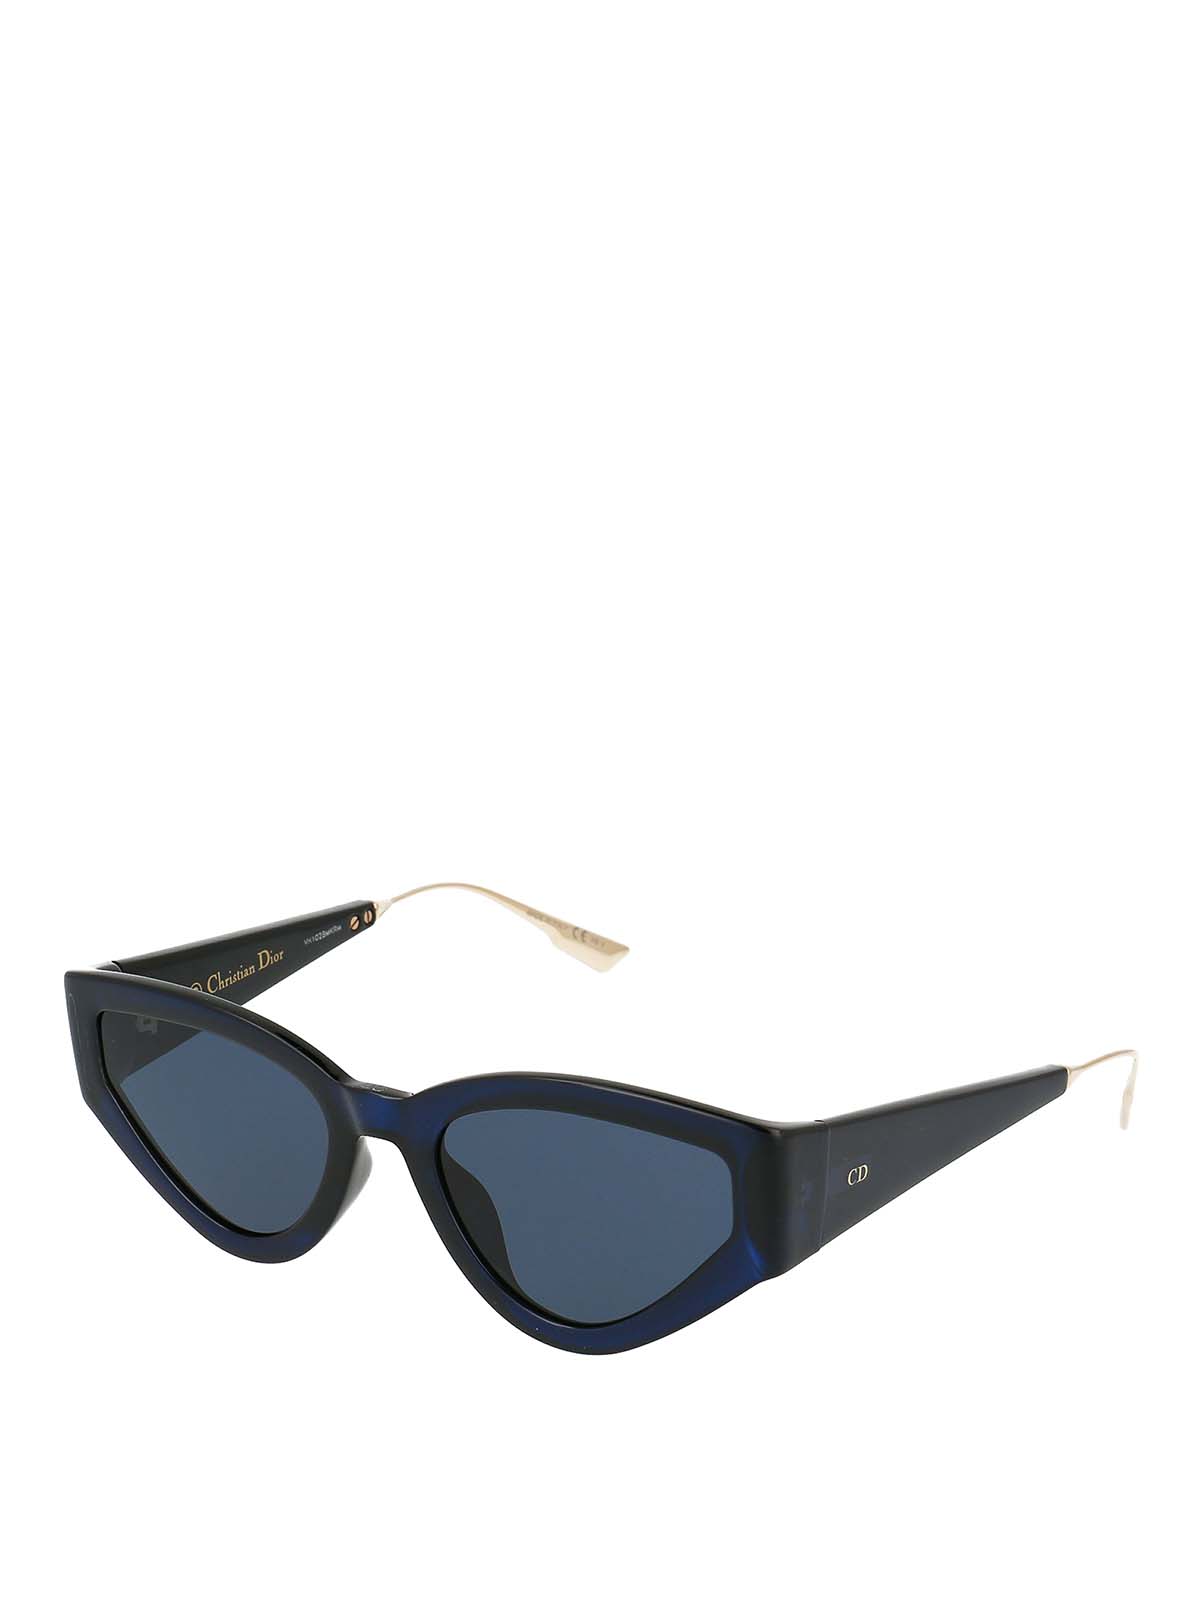 Dior  Accessories  Dior Catstyledior Sunglasses  Poshmark